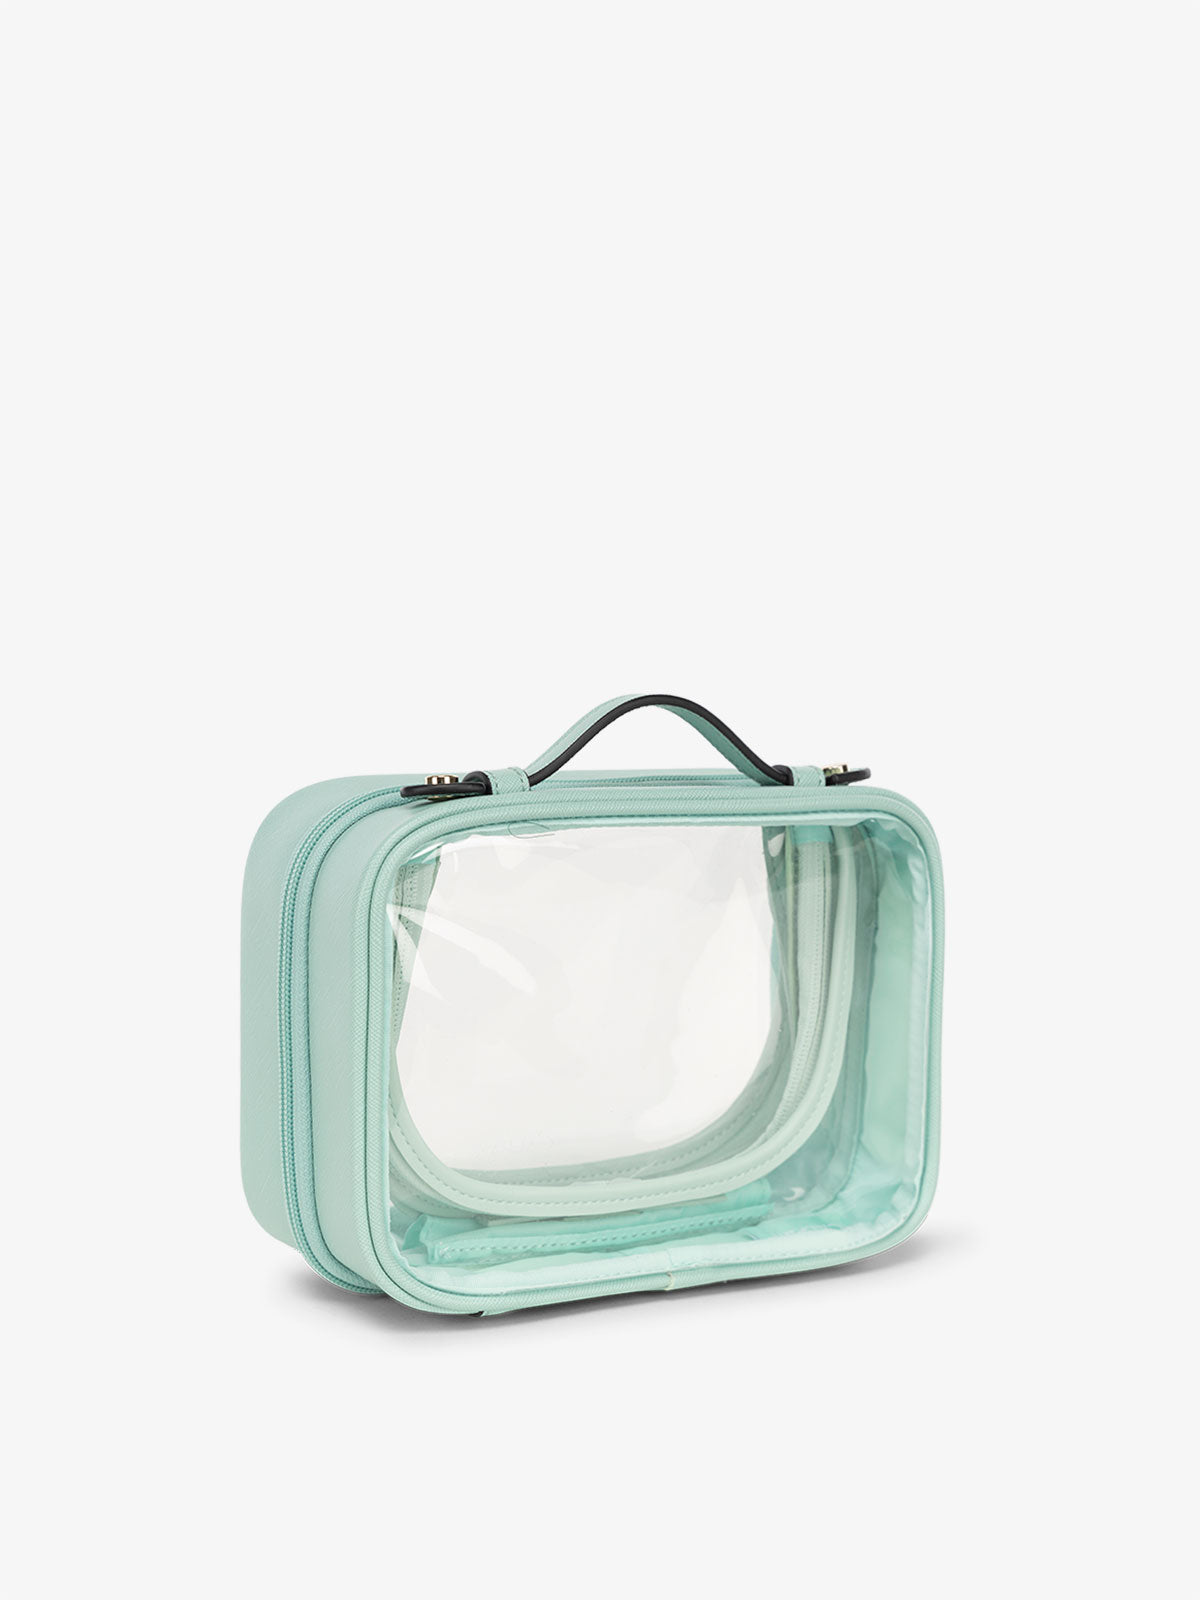 CALPAK water resistant clear makeup bag for women in aqua blue